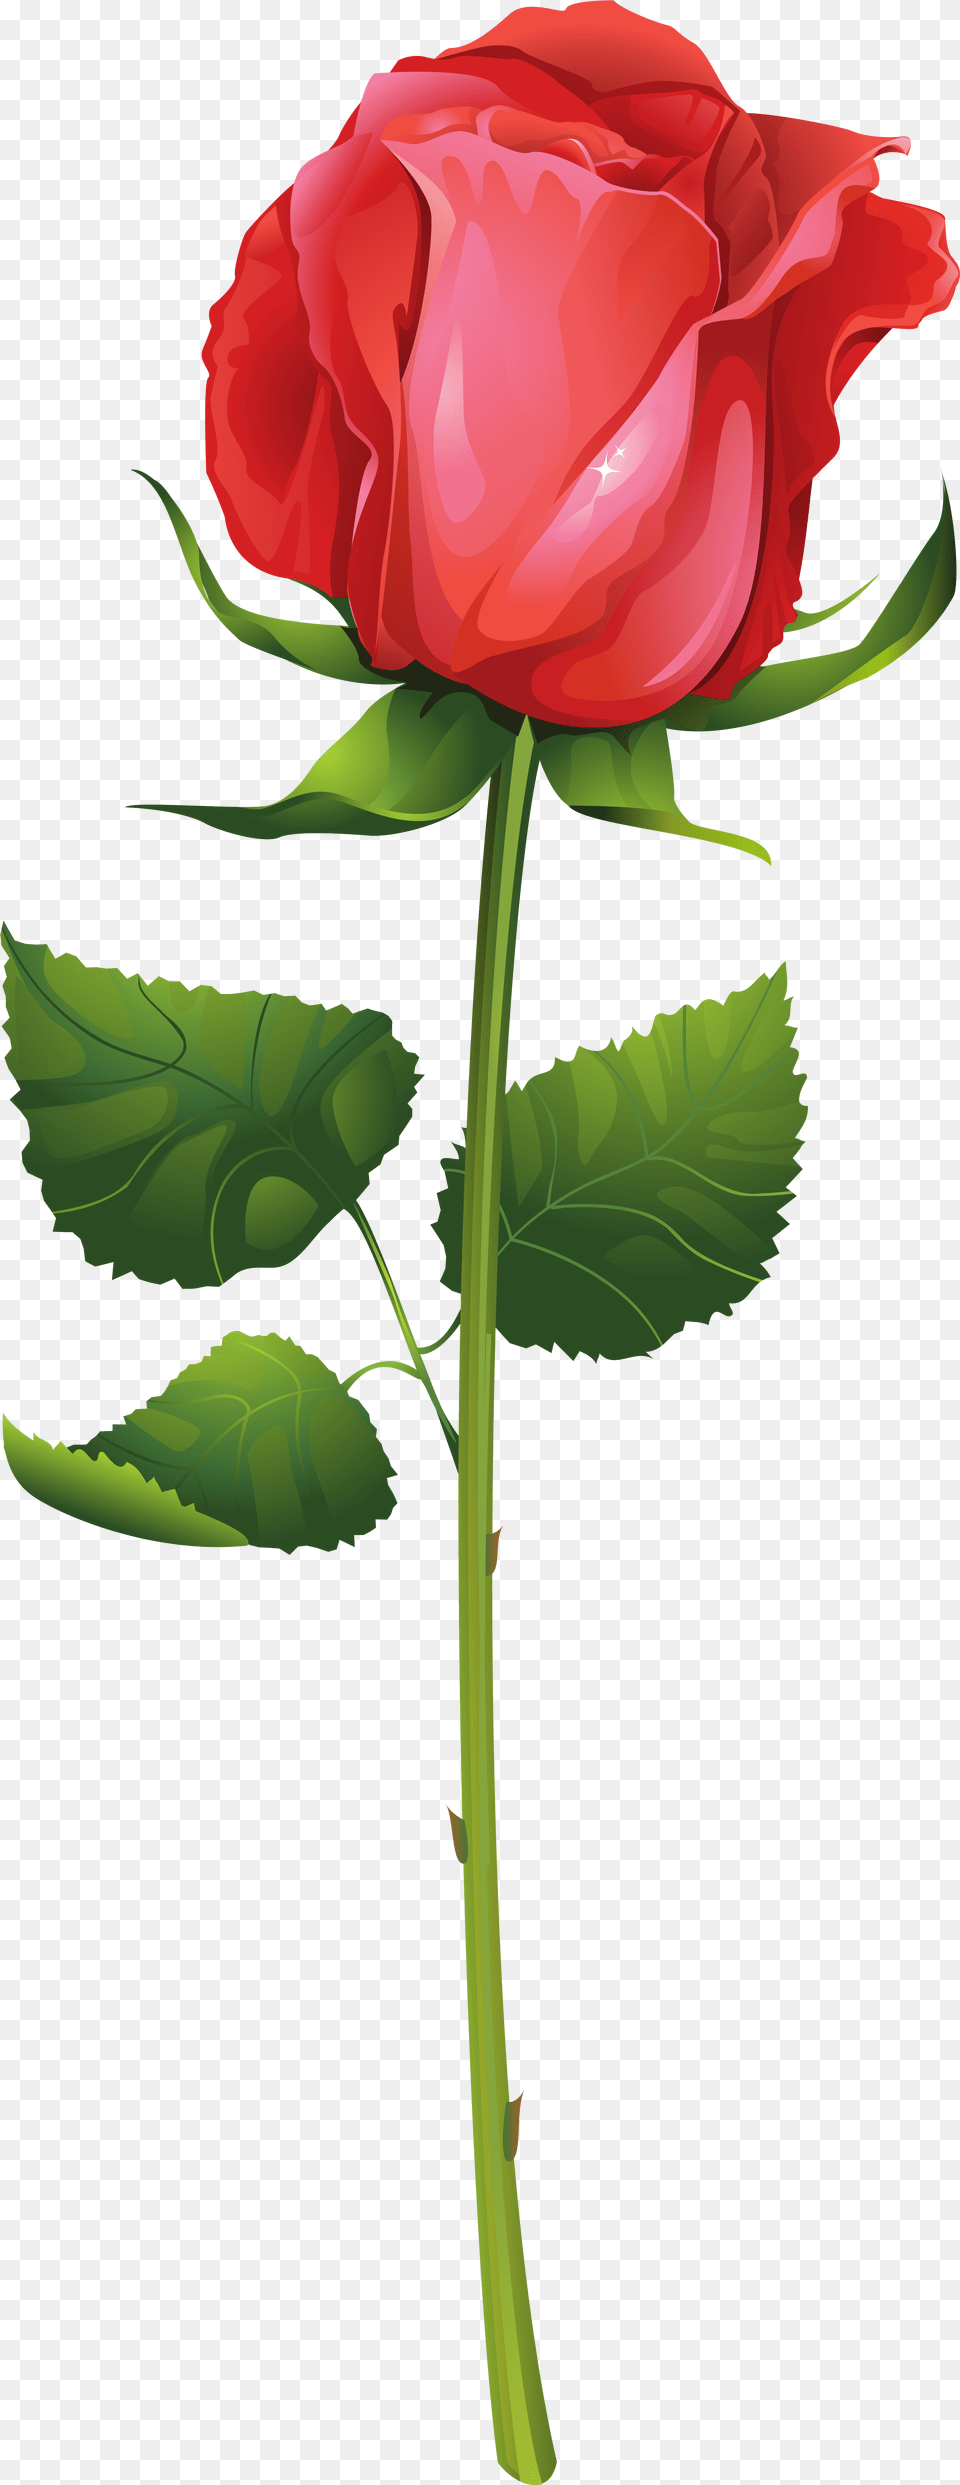 Transparent Stem Clipart Red Rose Illustration Vector, Flower, Plant Free Png